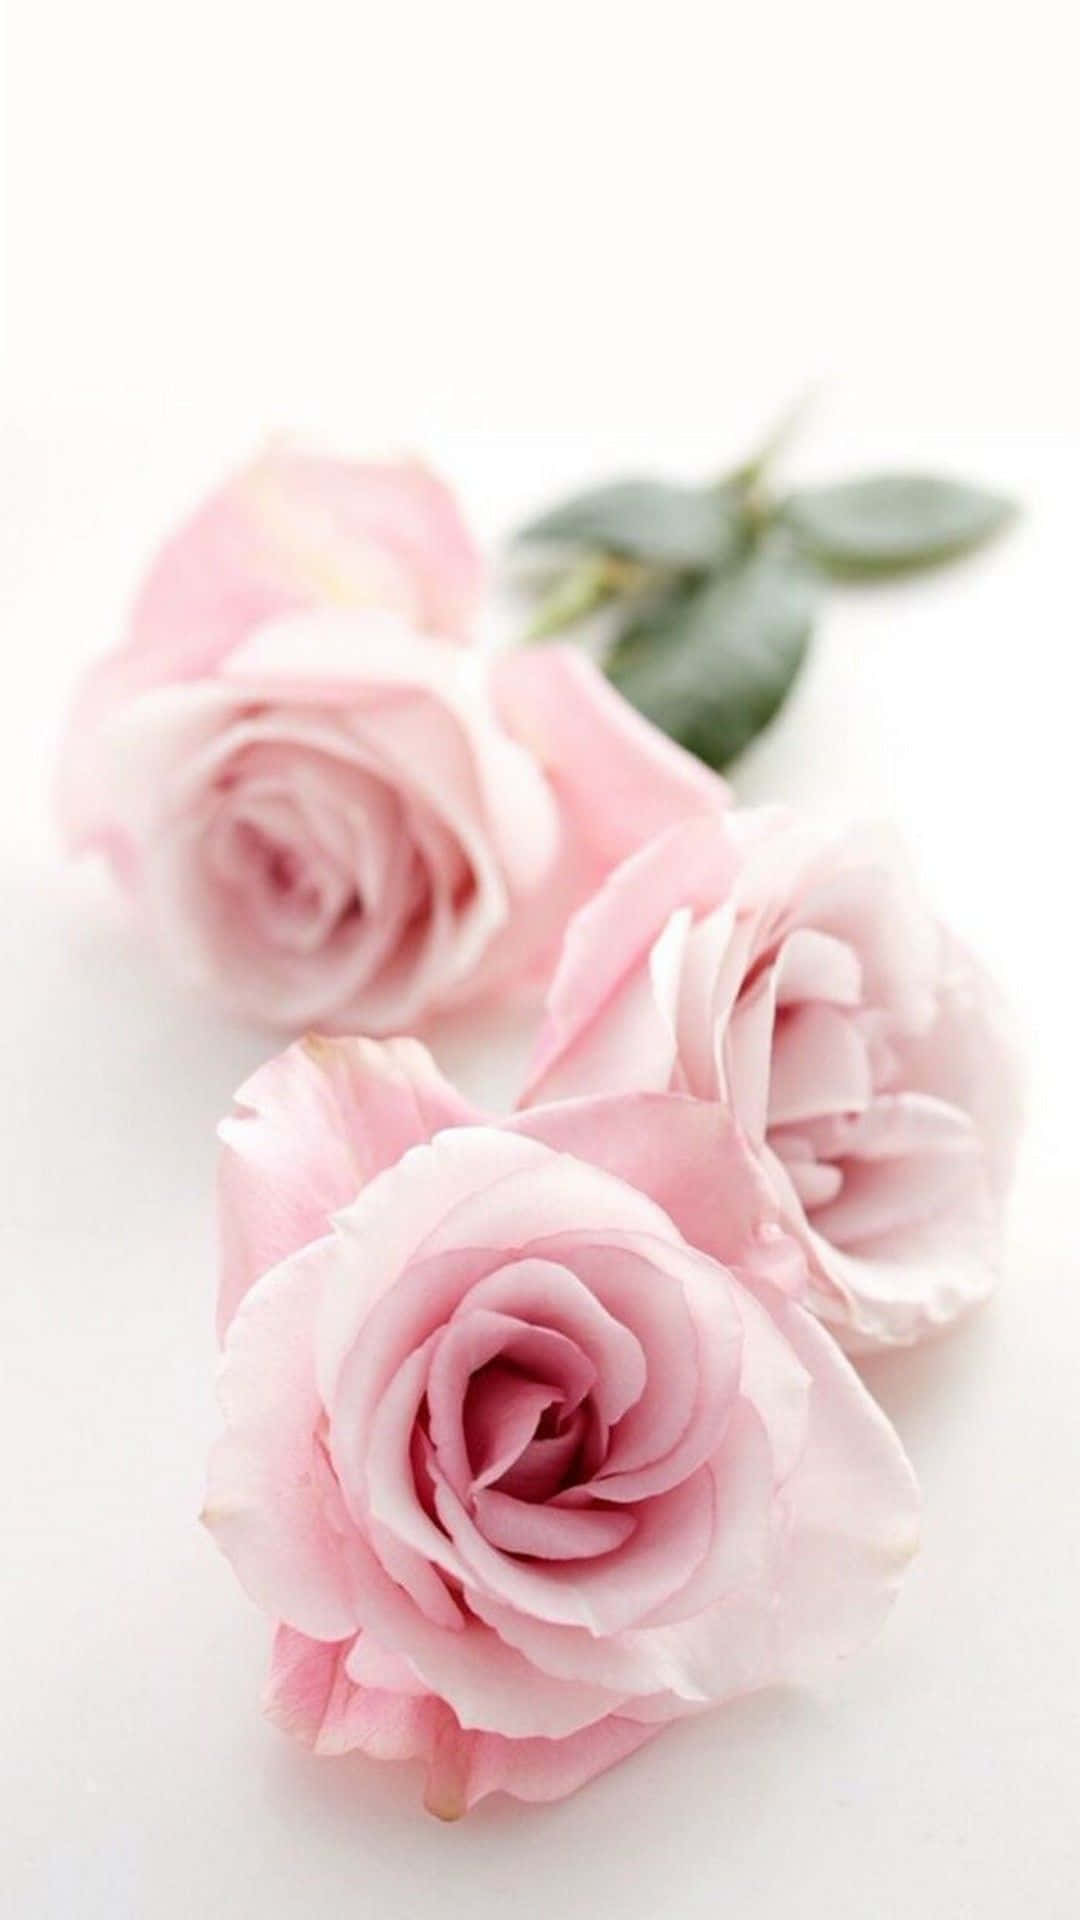 Unahermosa Y Adorable Flor En Tonos Rosados Y Amarillos. Fondo de pantalla